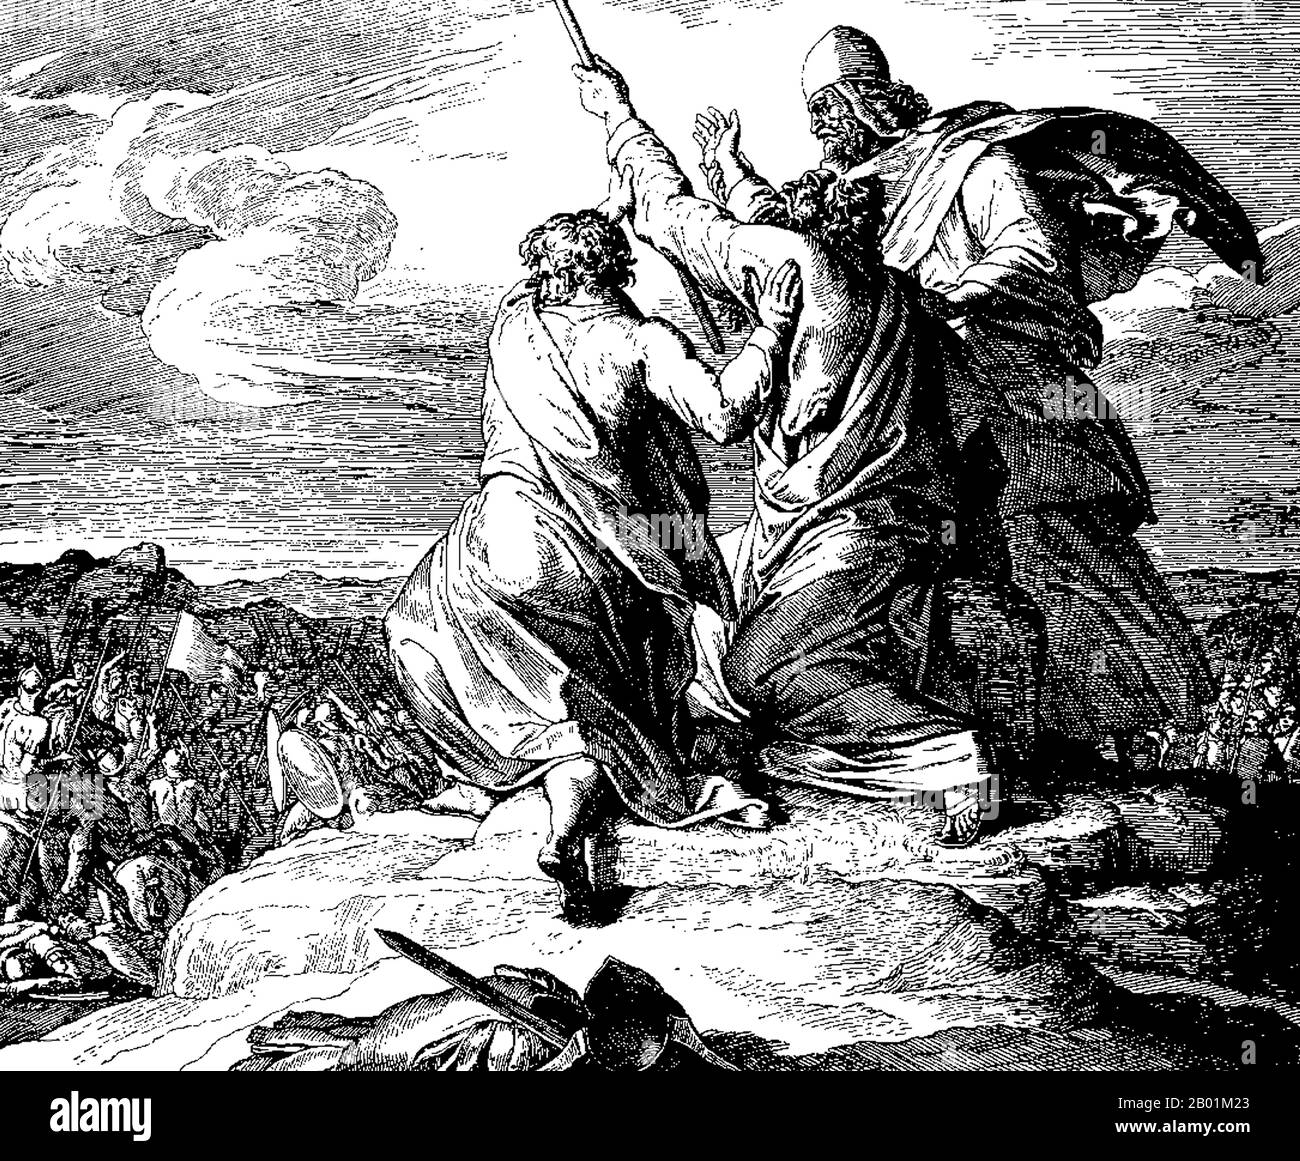 Allemagne : 'bataille avec les Amalécites'. Moïse levant les bras pendant la bataille, assisté par Aaron et Hur. Illustration sur bois de Julius Schnorr von Carolsfeld (26 mars 1794 - 24 mai 1872) pour Die Bibel in Bildern, v. 1860. Moïse était, selon la Bible hébraïque et le Coran, un chef religieux, législateur et prophète, à qui la paternité de la Torah est traditionnellement attribuée. Il est le prophète le plus important dans le judaïsme, et est également considéré comme un prophète important dans le christianisme et l'islam, ainsi que dans un certain nombre d'autres religions. Banque D'Images